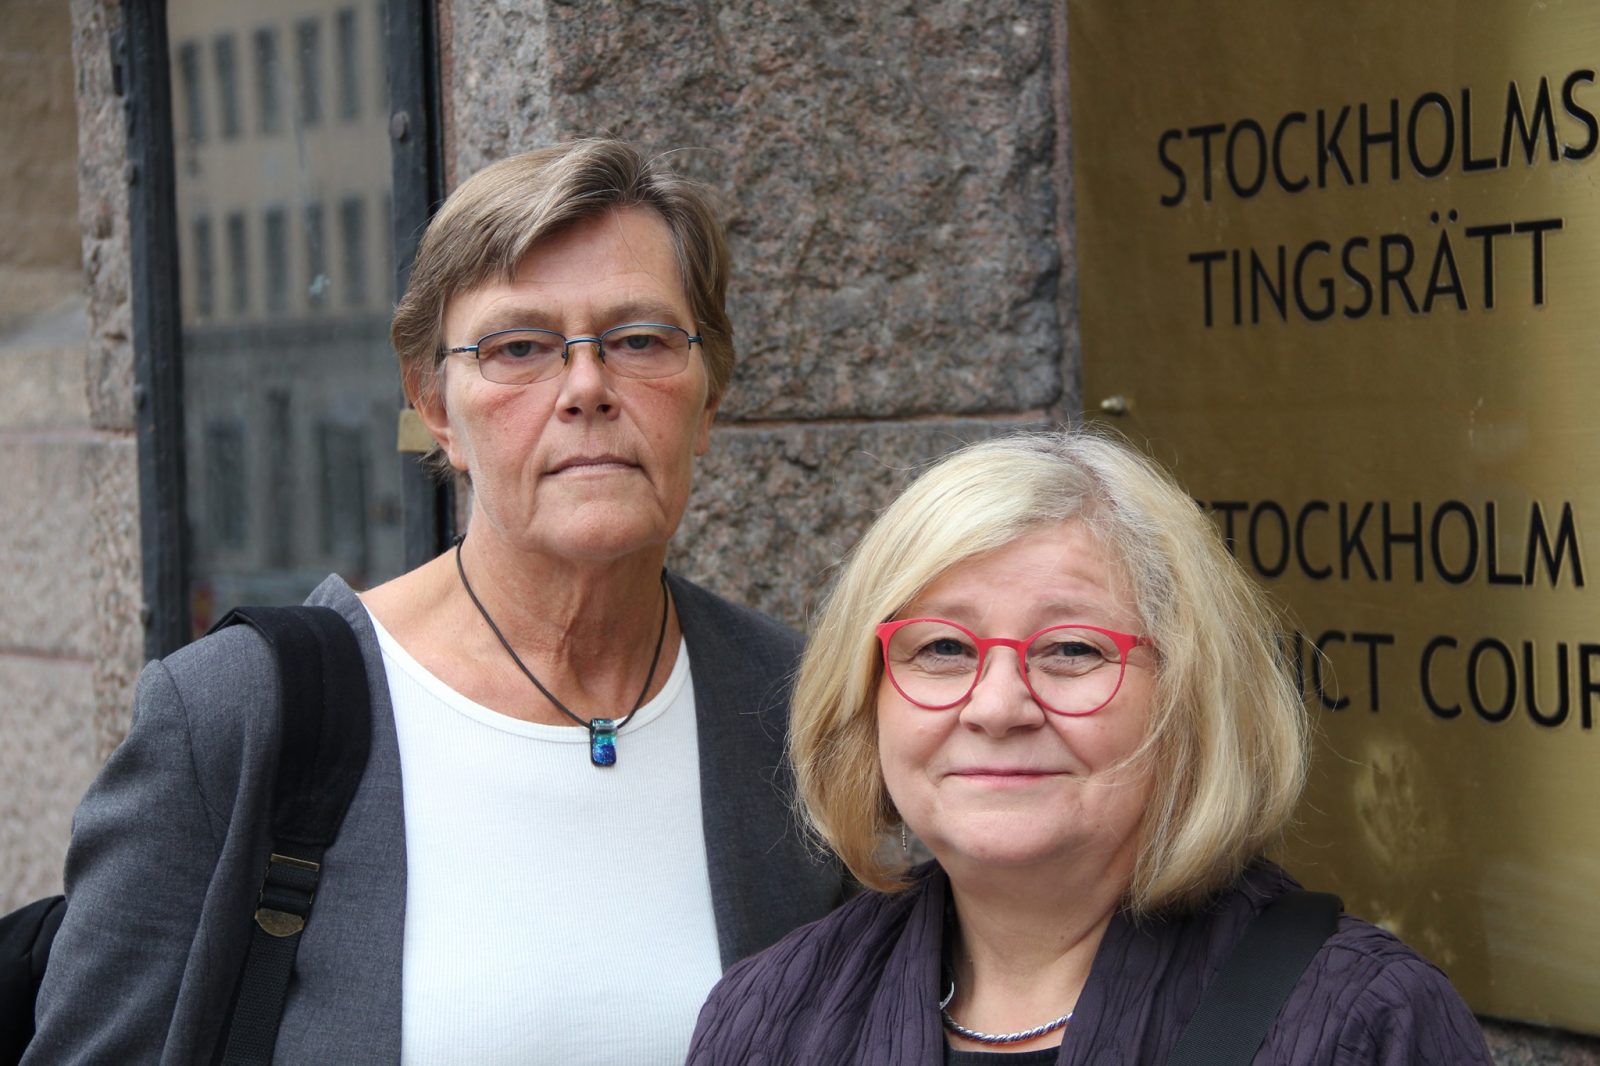 Två kvinnor framför skylt som säger "Stockholms tingsrätt".